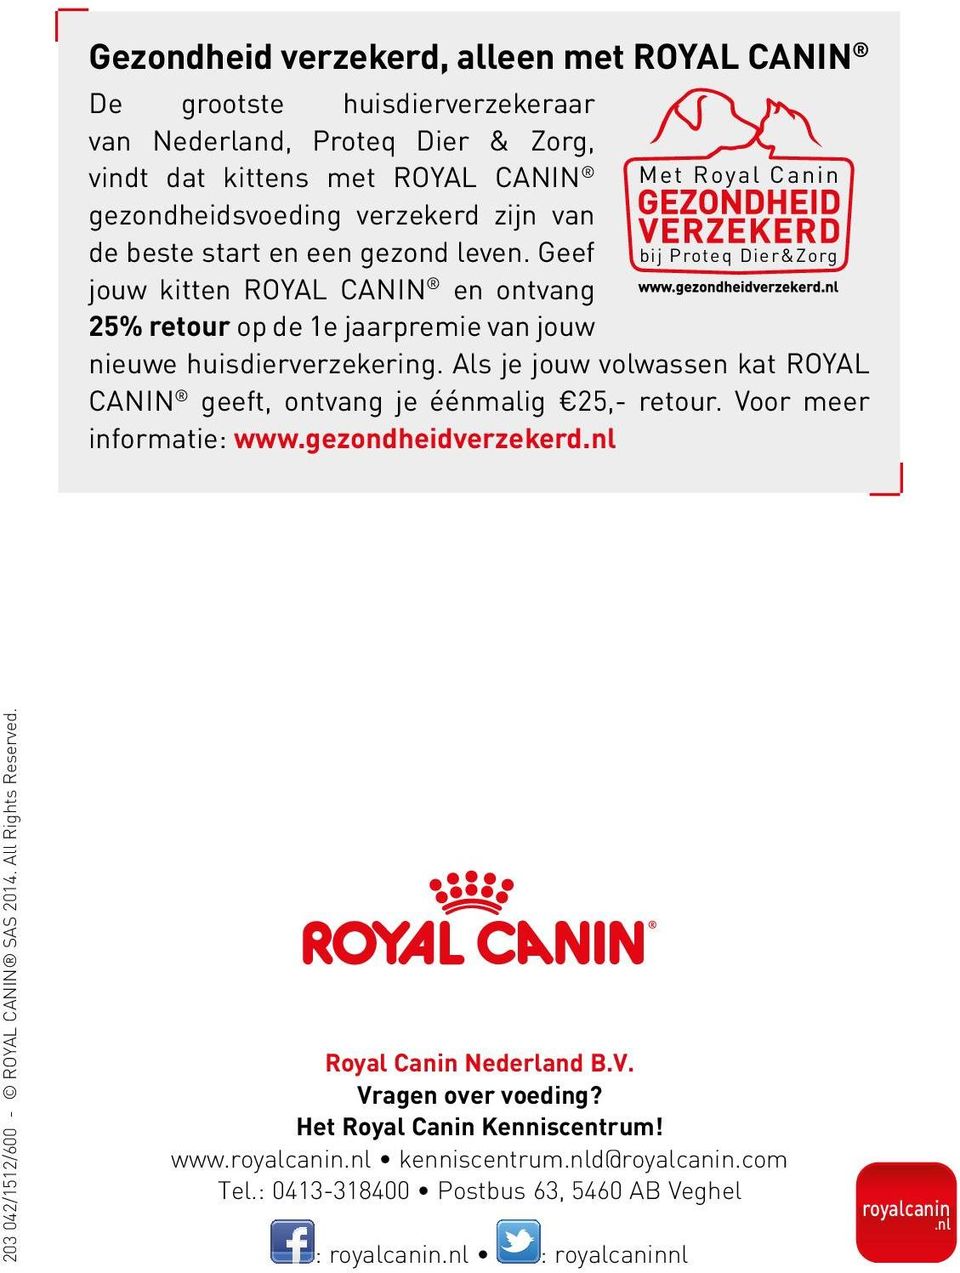 Als je jouw volwassen kat ROYAL CANIN geeft, ontvang je éénmalig 25,- retour. Voor meer informatie: www.gezondheidverzekerd.nl 203 042/1512/600 - ROYAL CANIN SAS 2014. All Rights Reserved.